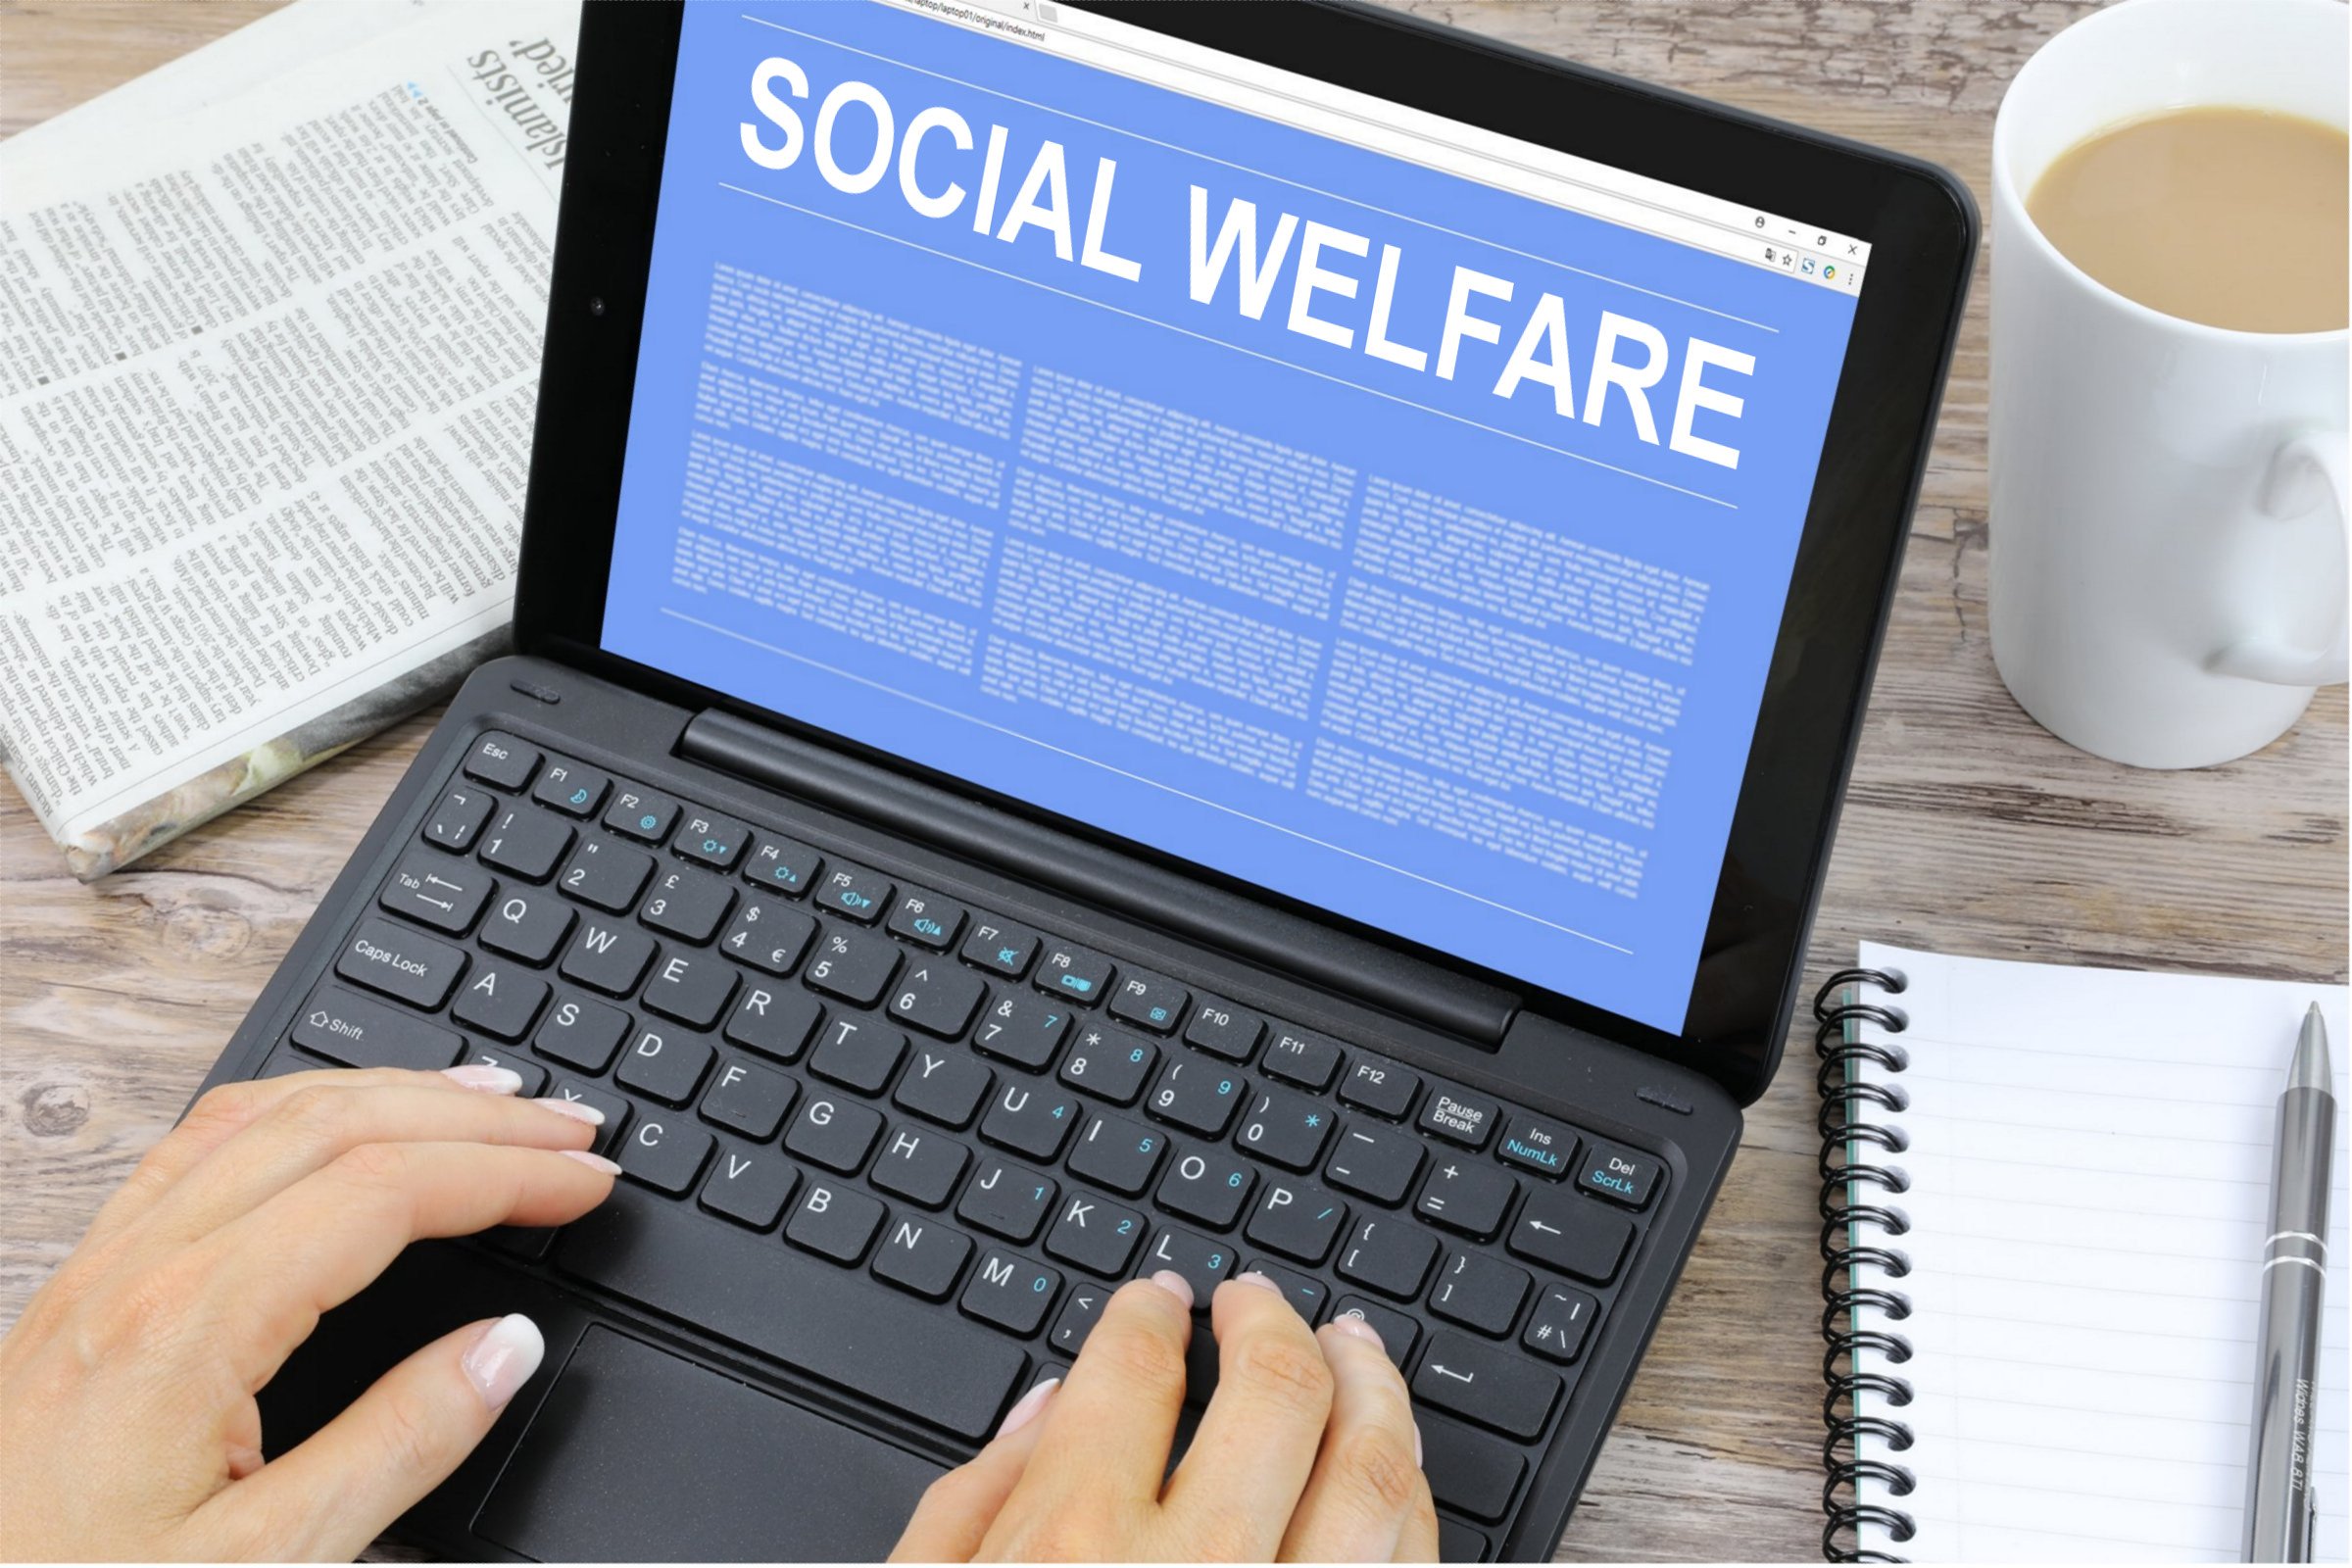 social welfare